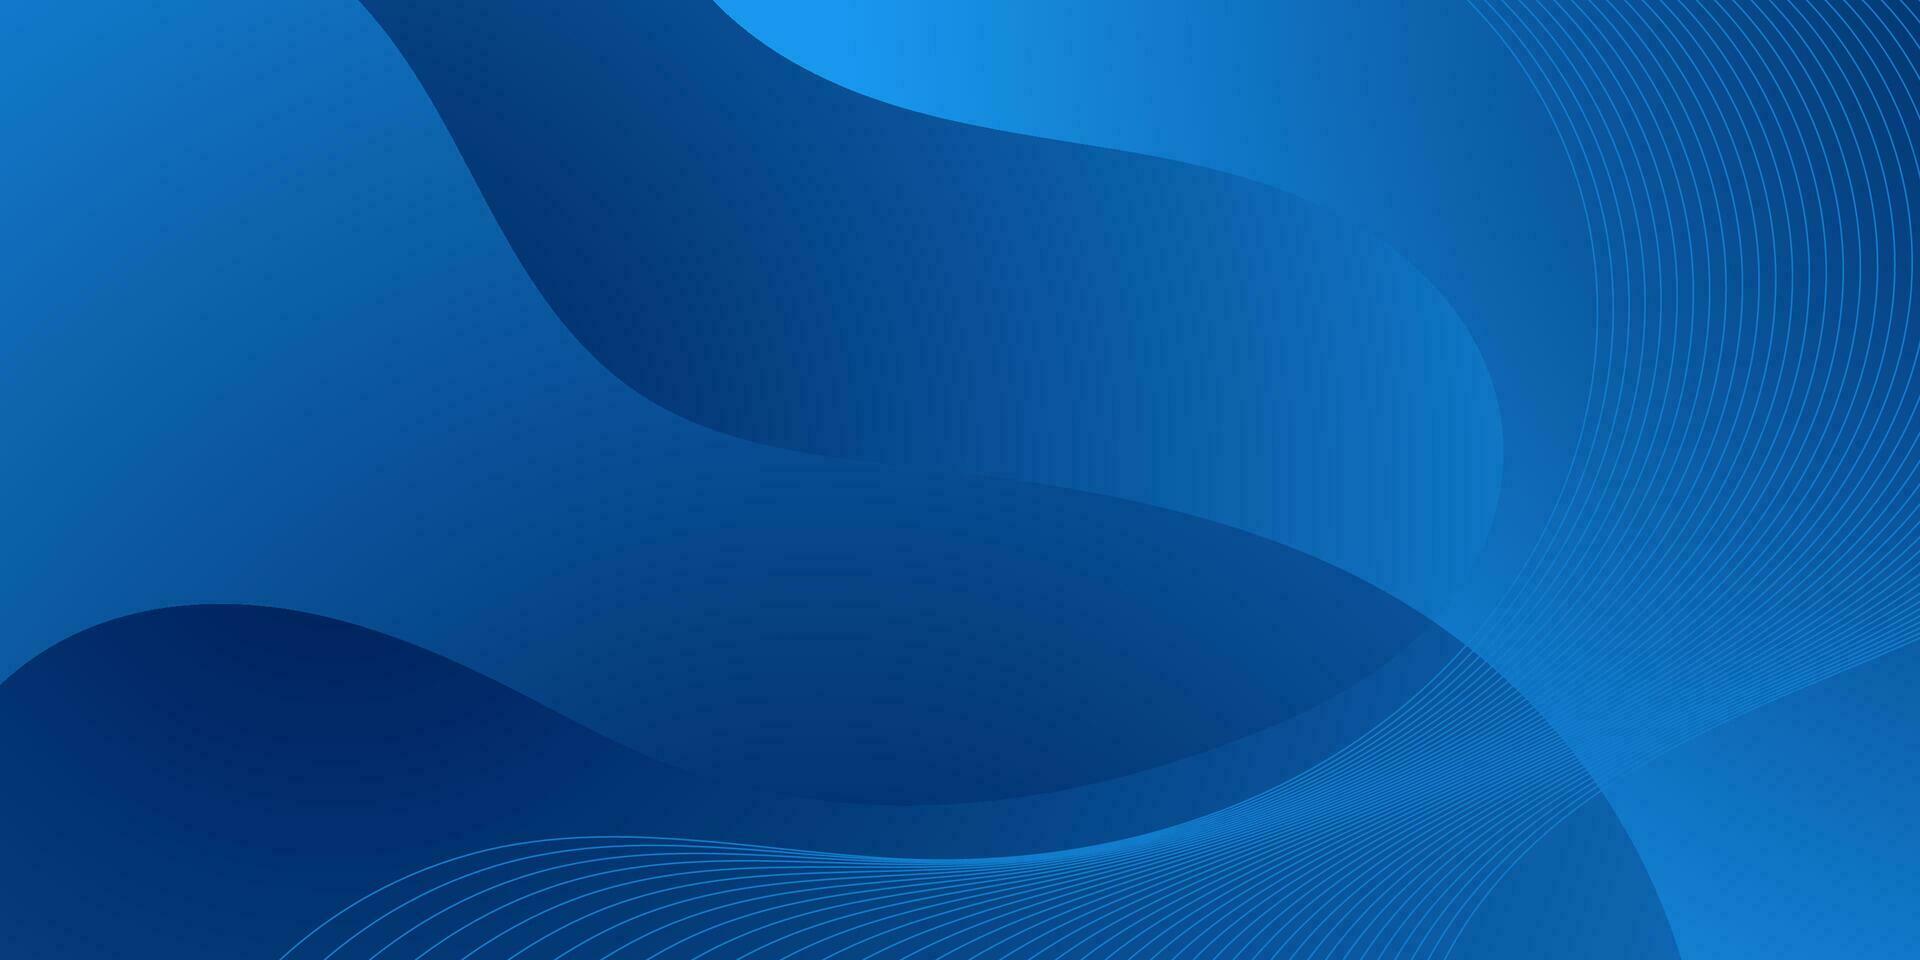 abstrakt blå Vinka lutning bakgrund vektor